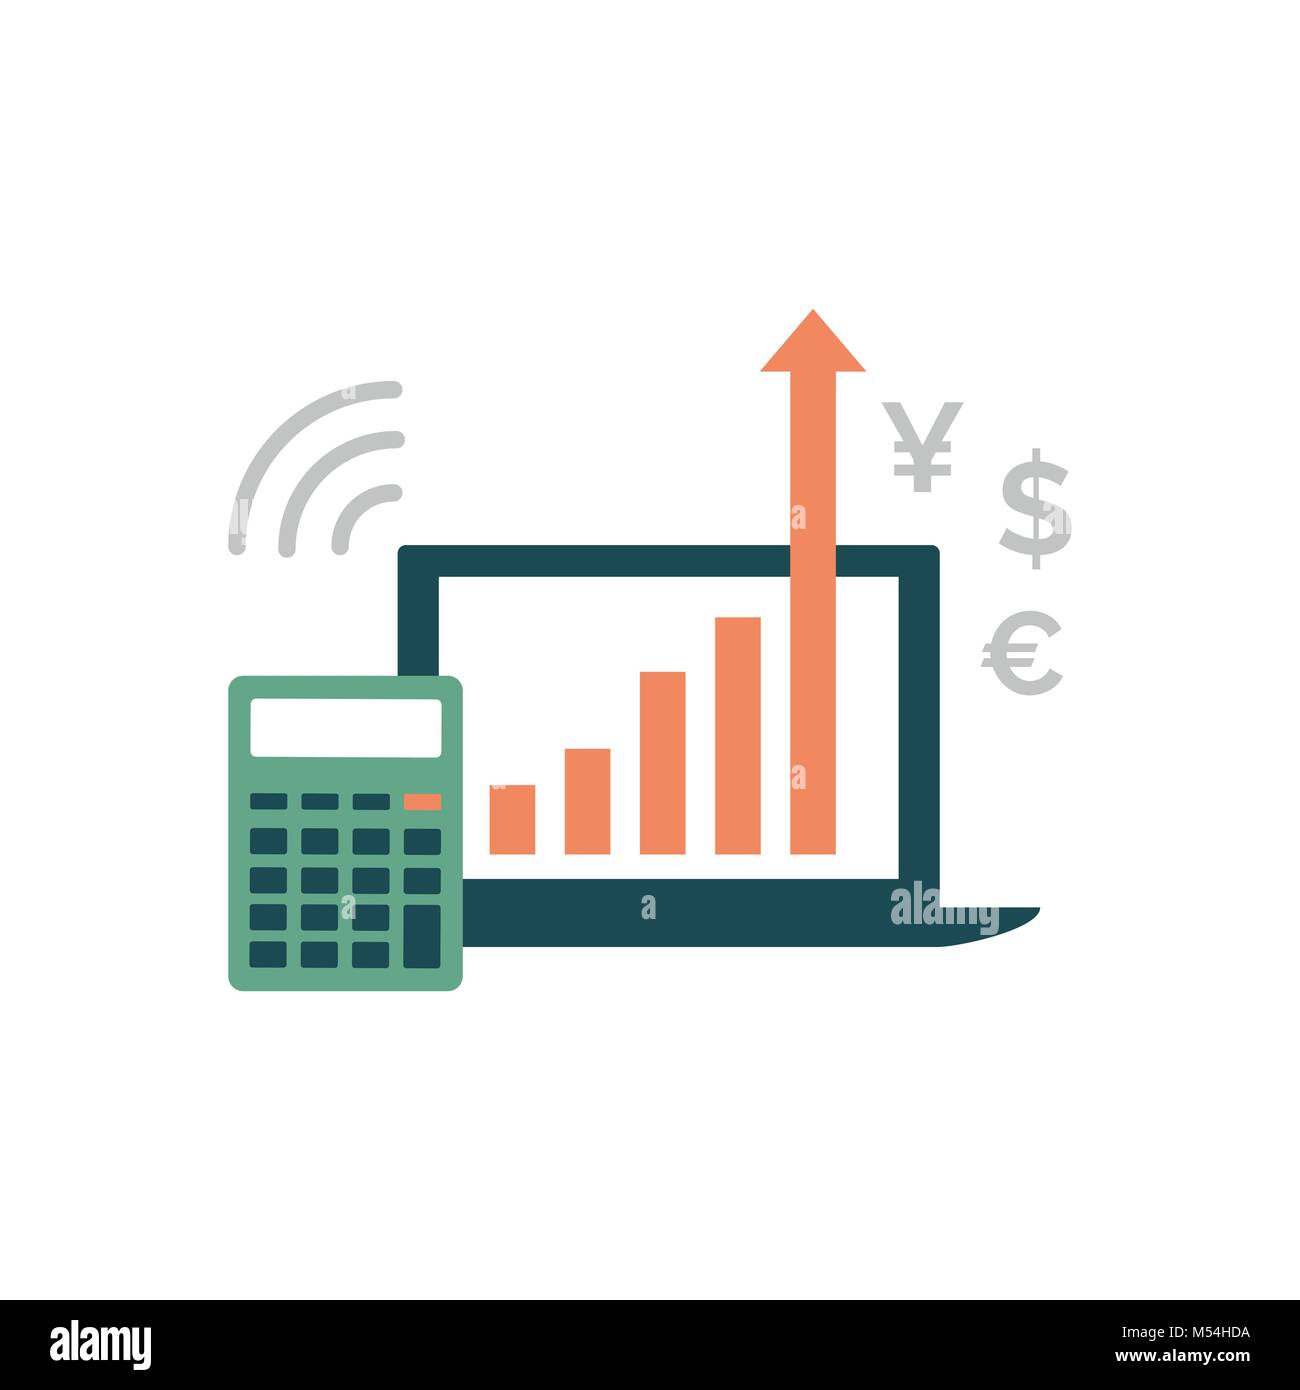 Computer portatile con successo grafico finanziario e calcolatrice, finanza e investimenti di successo concept Illustrazione Vettoriale